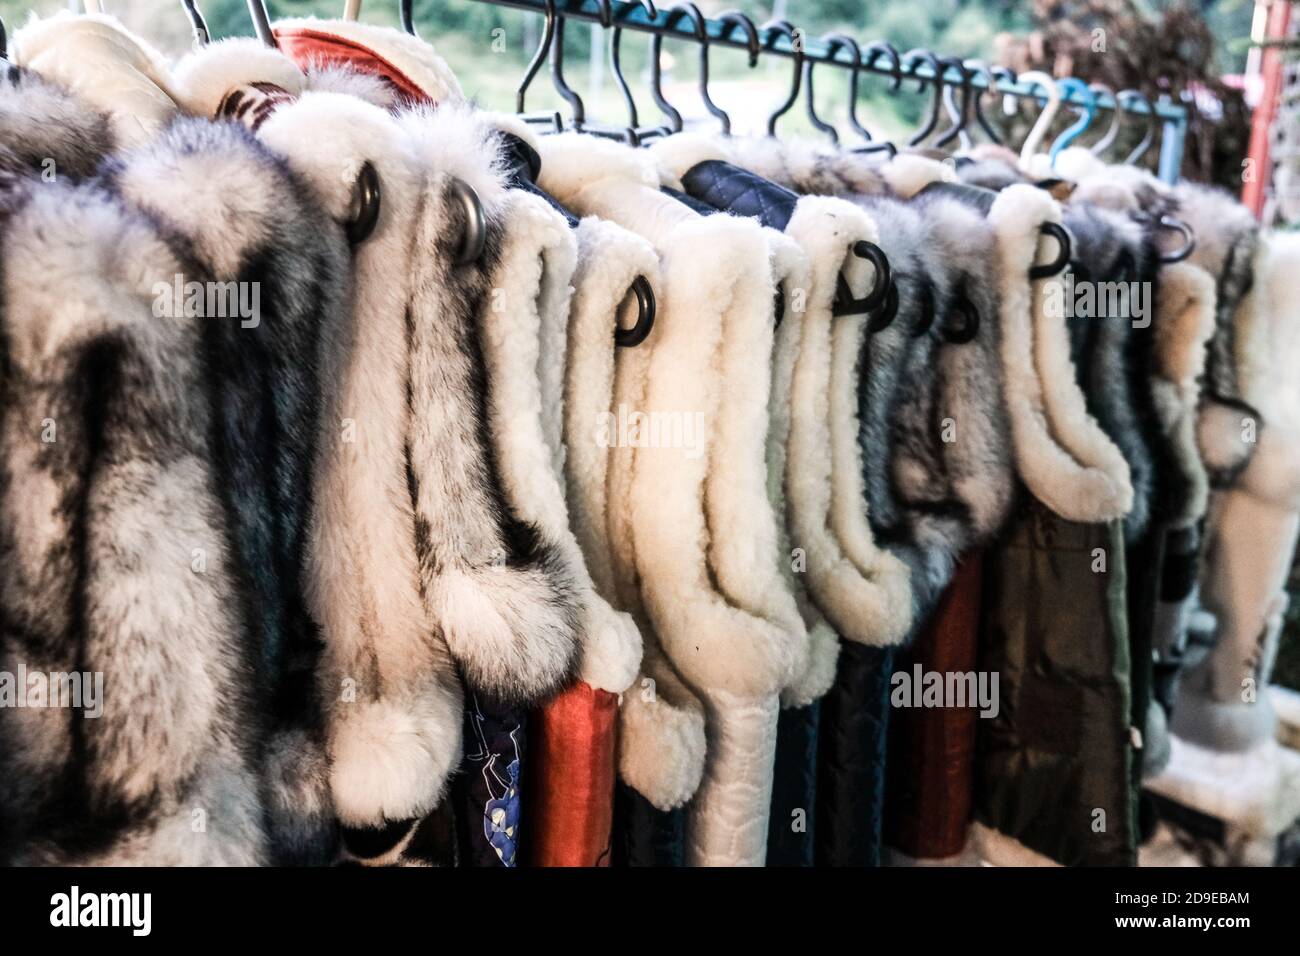 Un tas de gilets de fourrure traditionnels ukrainiens suspendus pour la vente dans un magasin extérieur dans un village rural en Ukraine. Artisanat fait à la main sur une foire locale. Banque D'Images